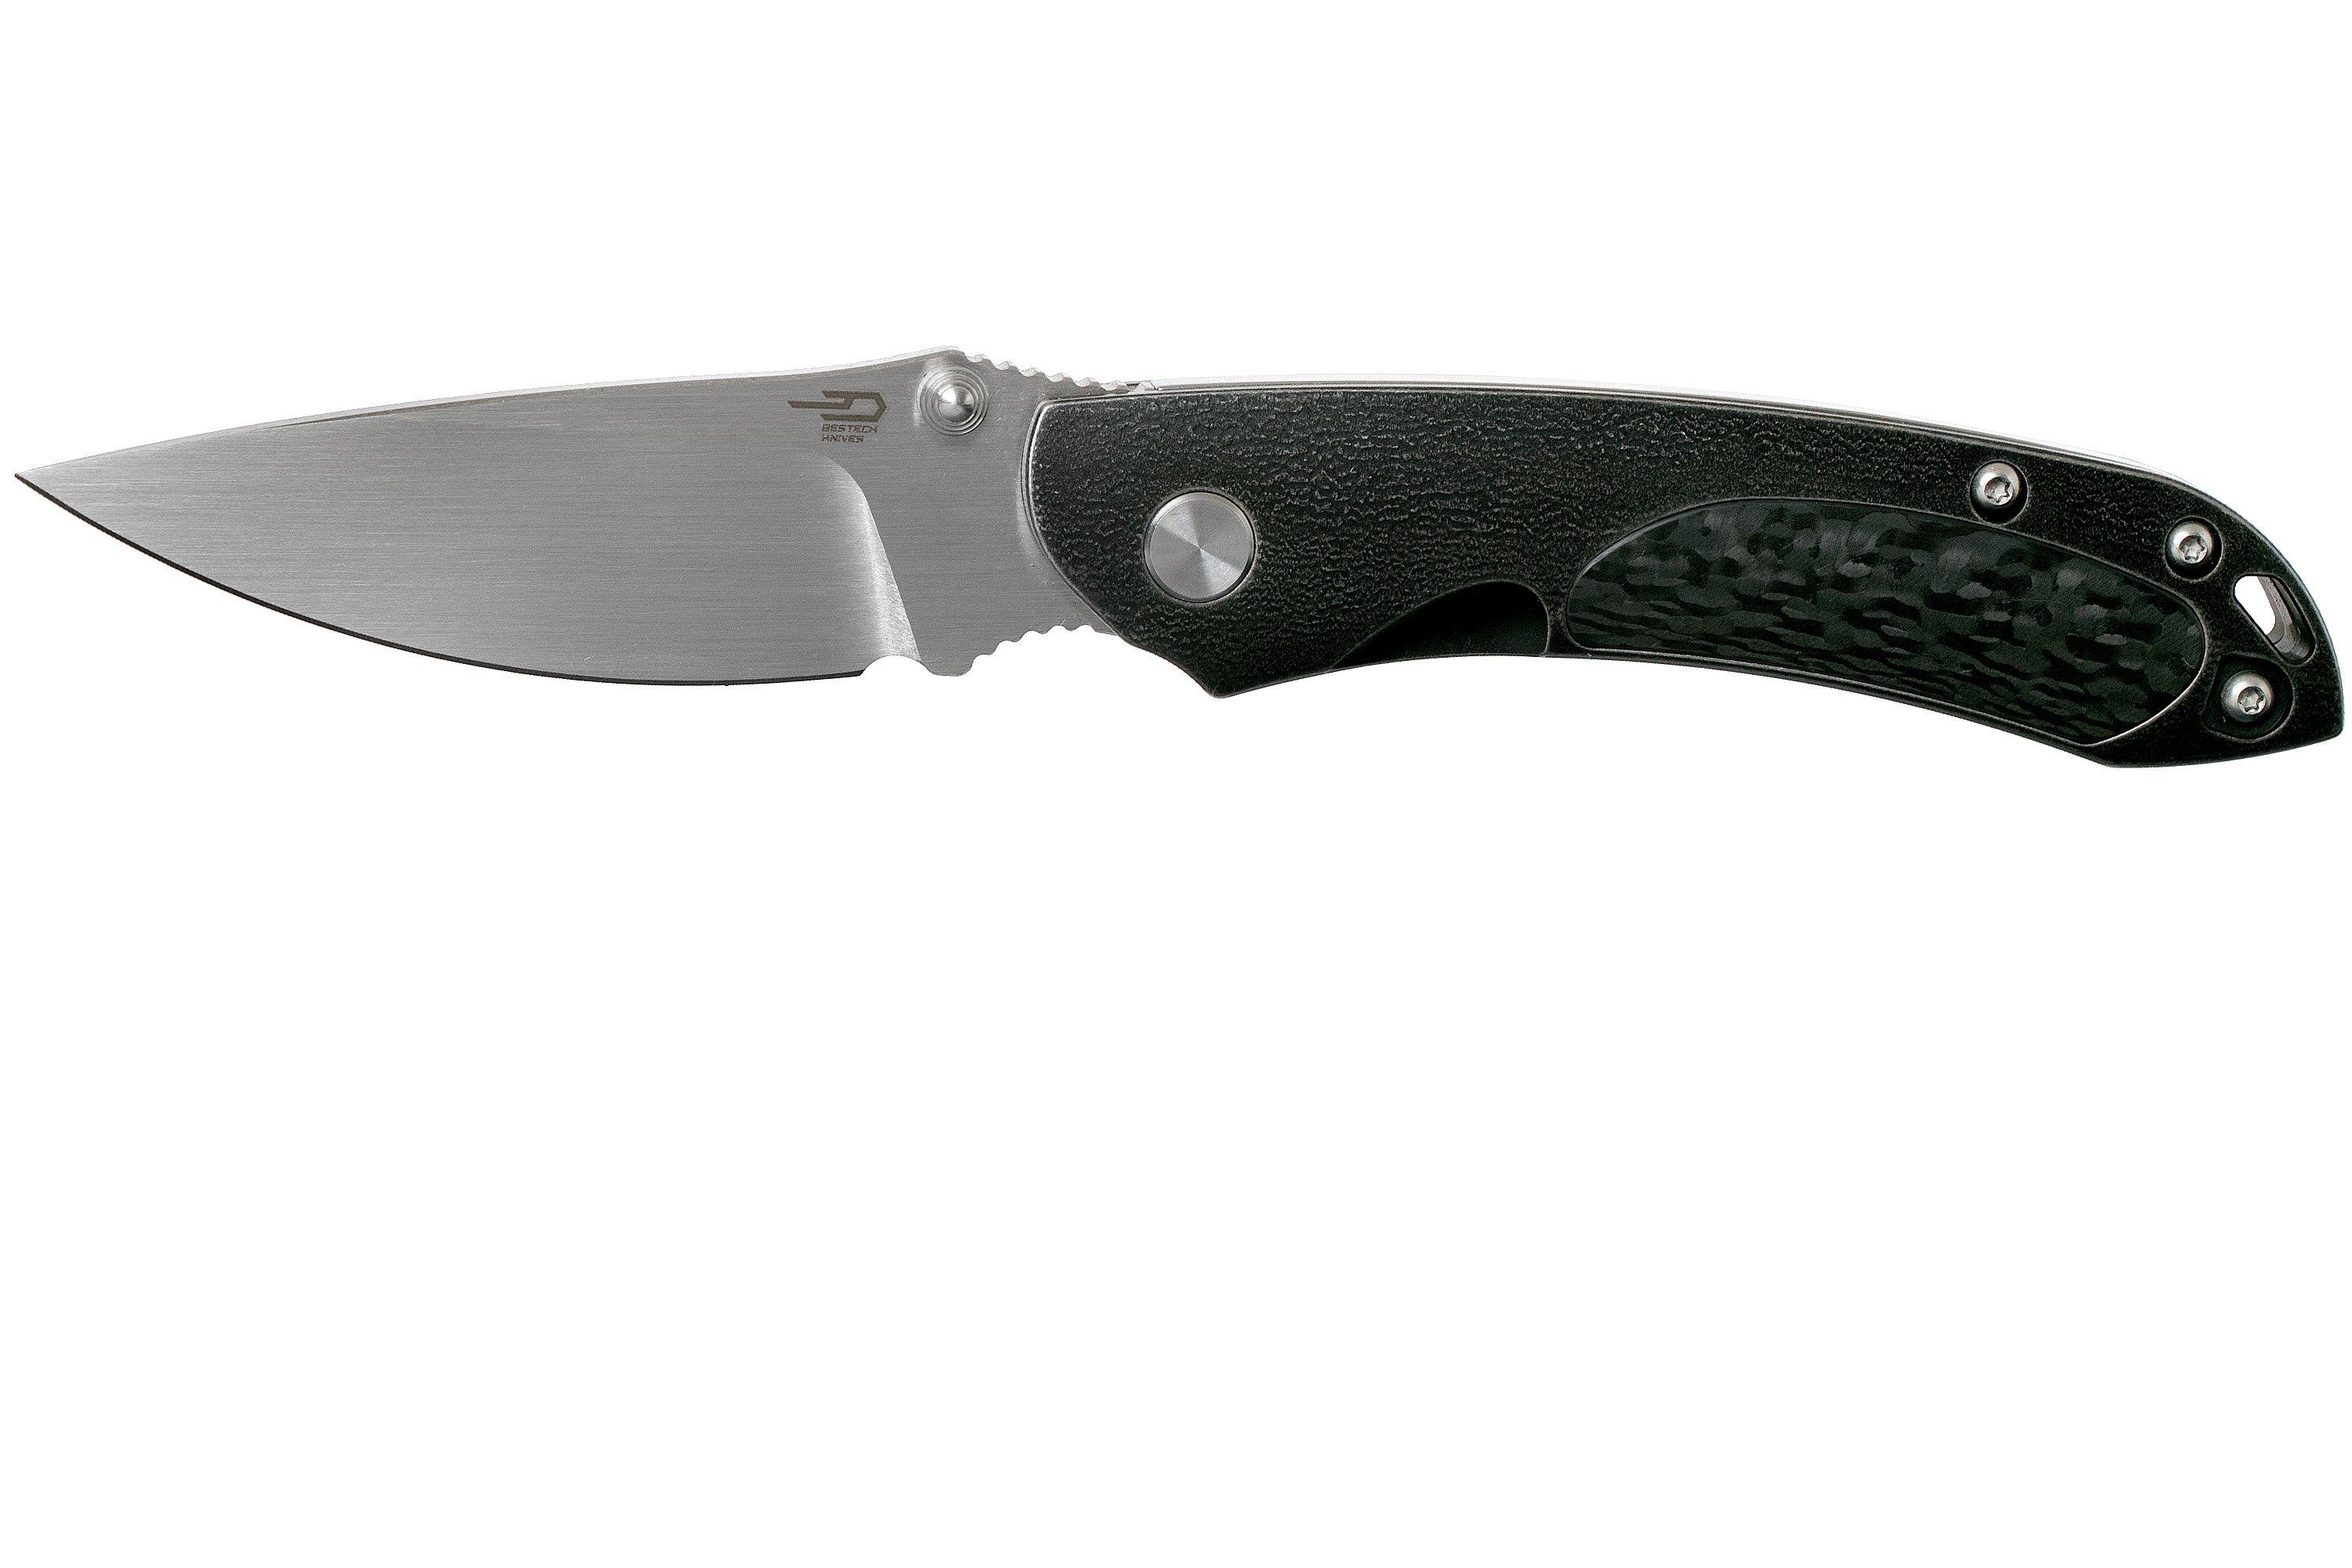 New Bestech Knives Junzi Slip Joint Blue BT1809D 